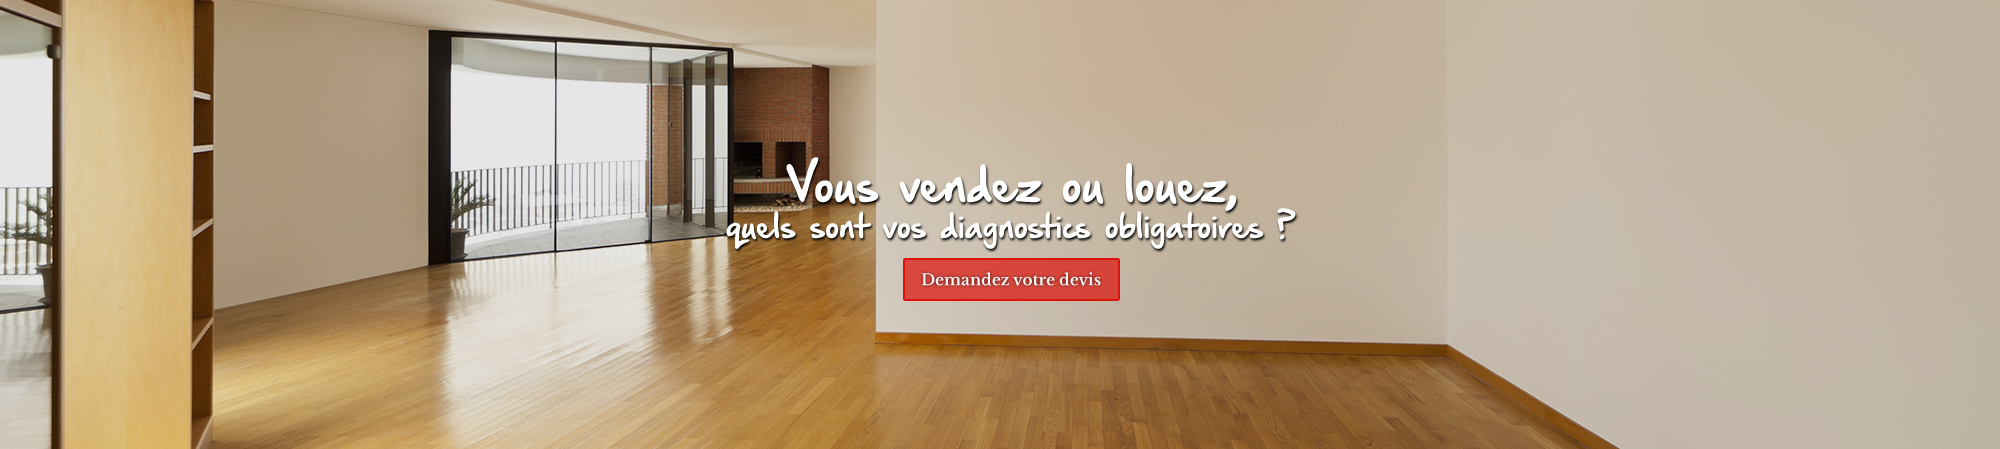 Devis diagnostic immobilier Montpellier